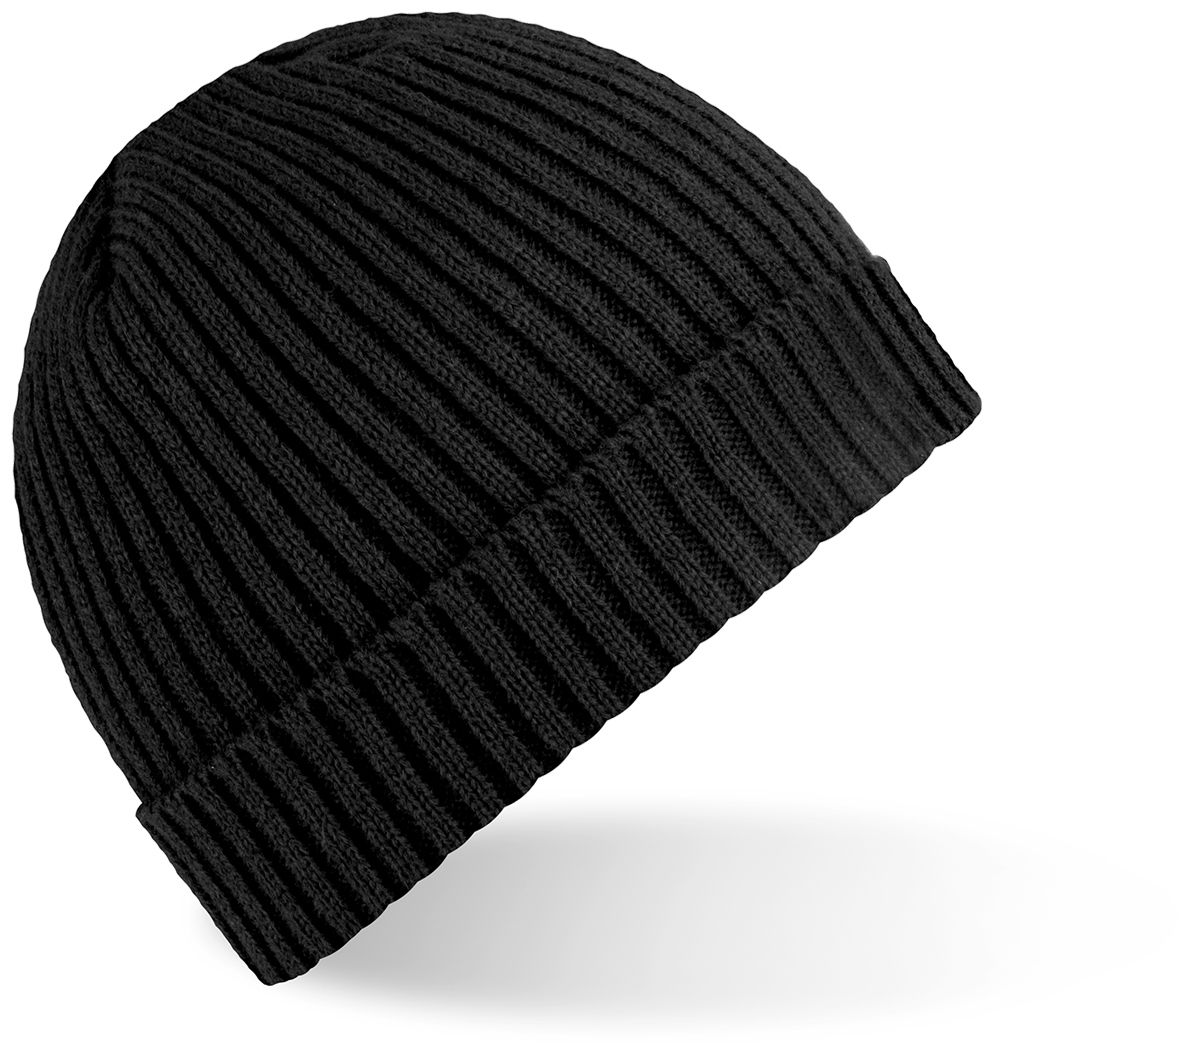 ACE Winter-Mütze - Strick-Mütze aus Schaf-Wolle für Erwachsene - Woll-Beanie für Damen & Herren